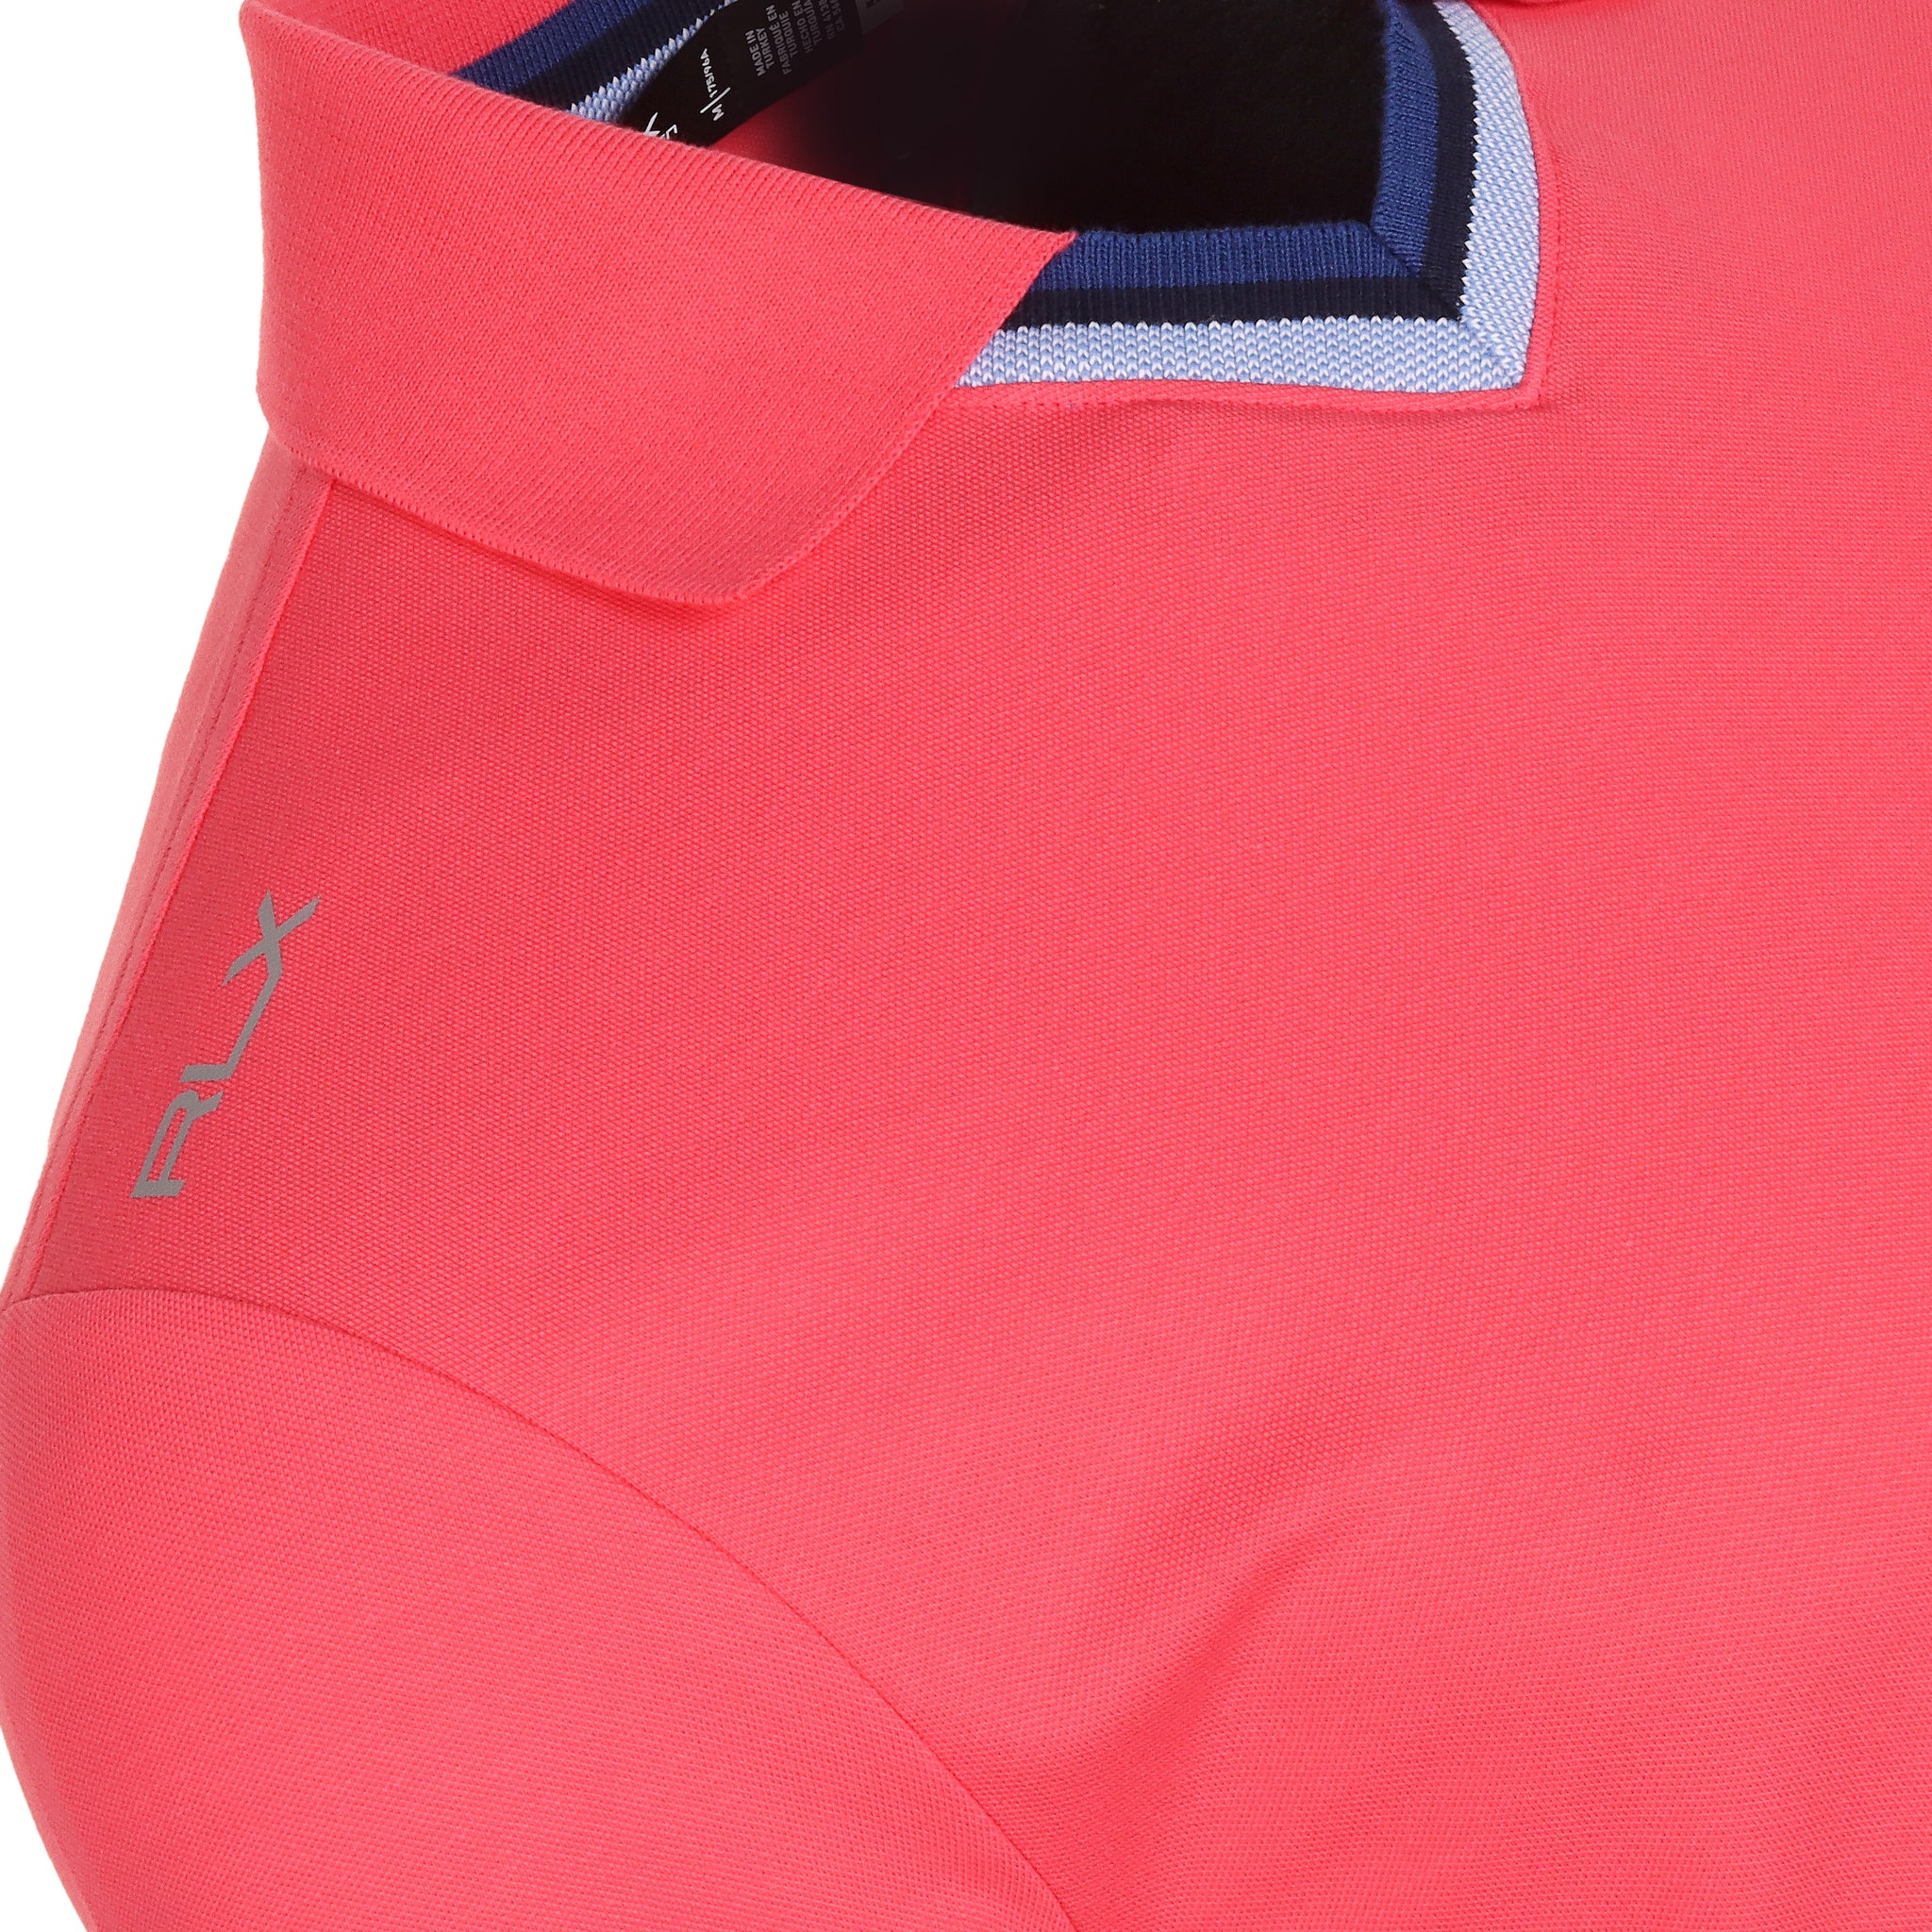 RLX Ralph Lauren Buttonless Pique Polo Shirt